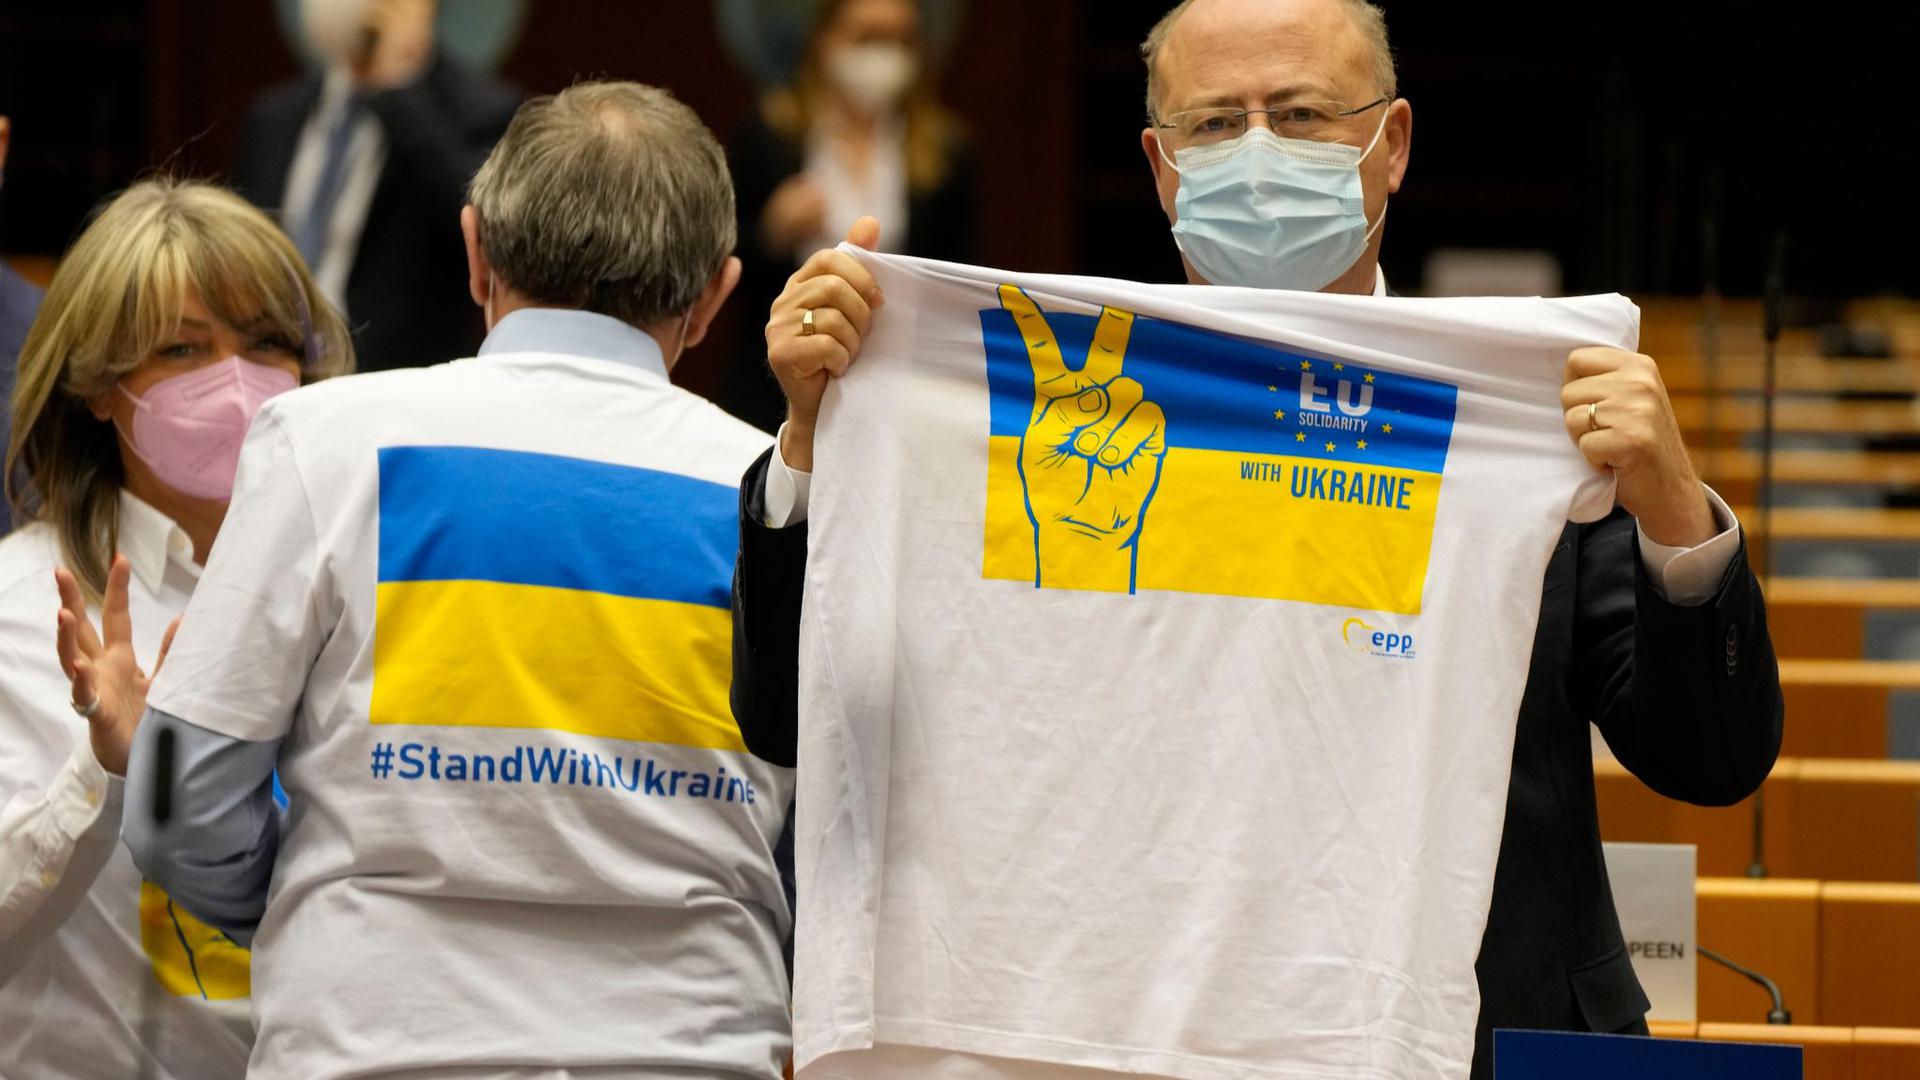 Ein Mitglied des Europäischen Parlaments hält ein T-Shirt in den Farben Blau und Gelb zur Unterstützung der Ukraine.